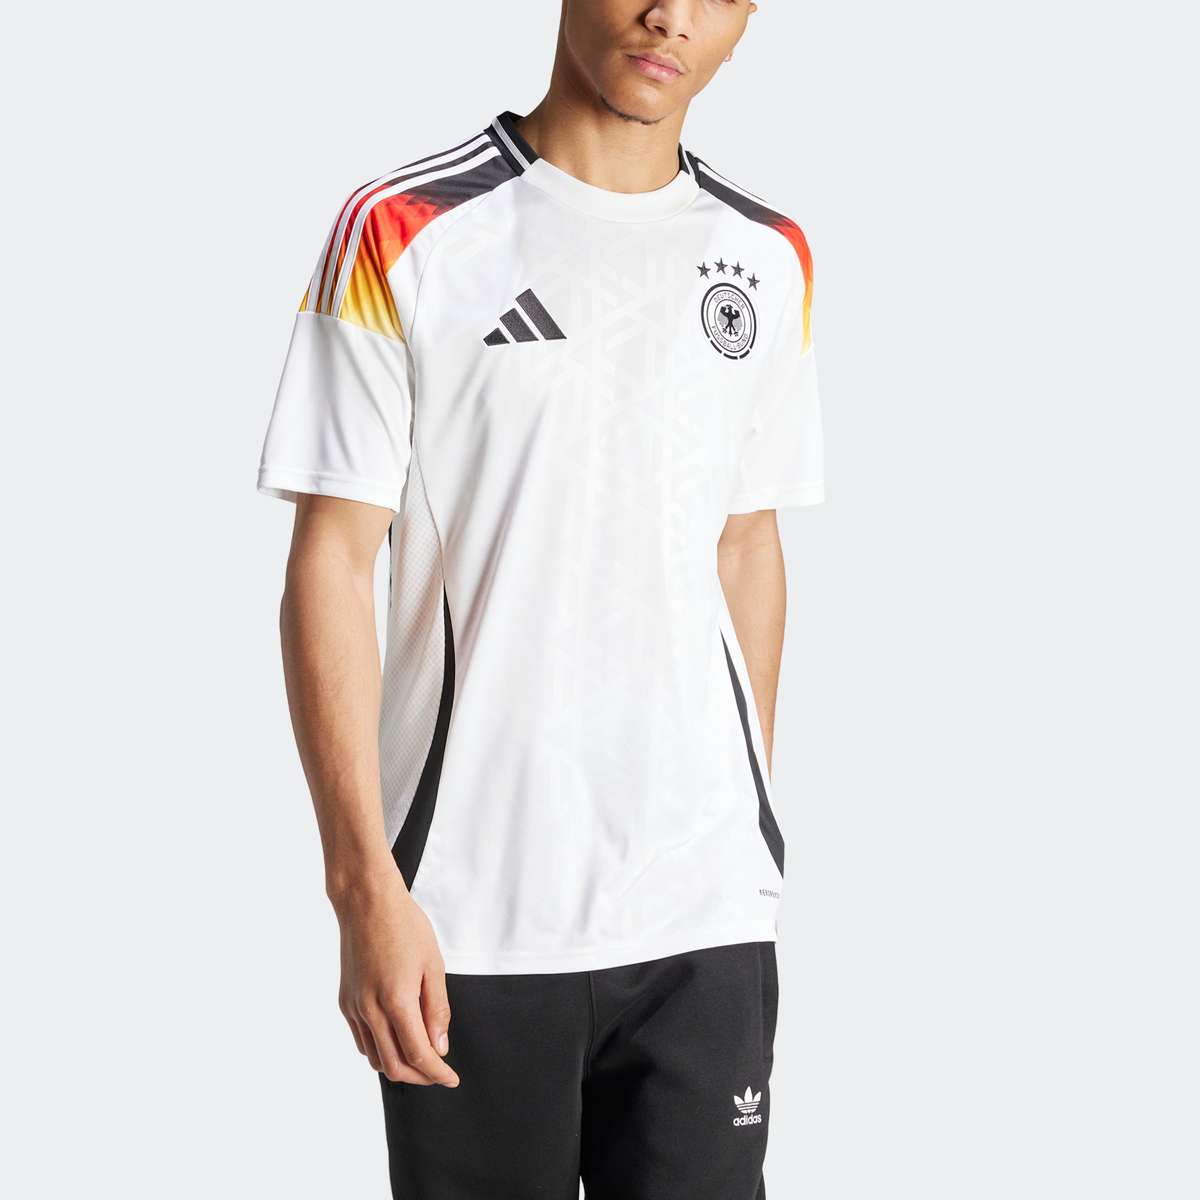 Футбольная майка, футболка чемпионата Европы 2024 года в Германии.